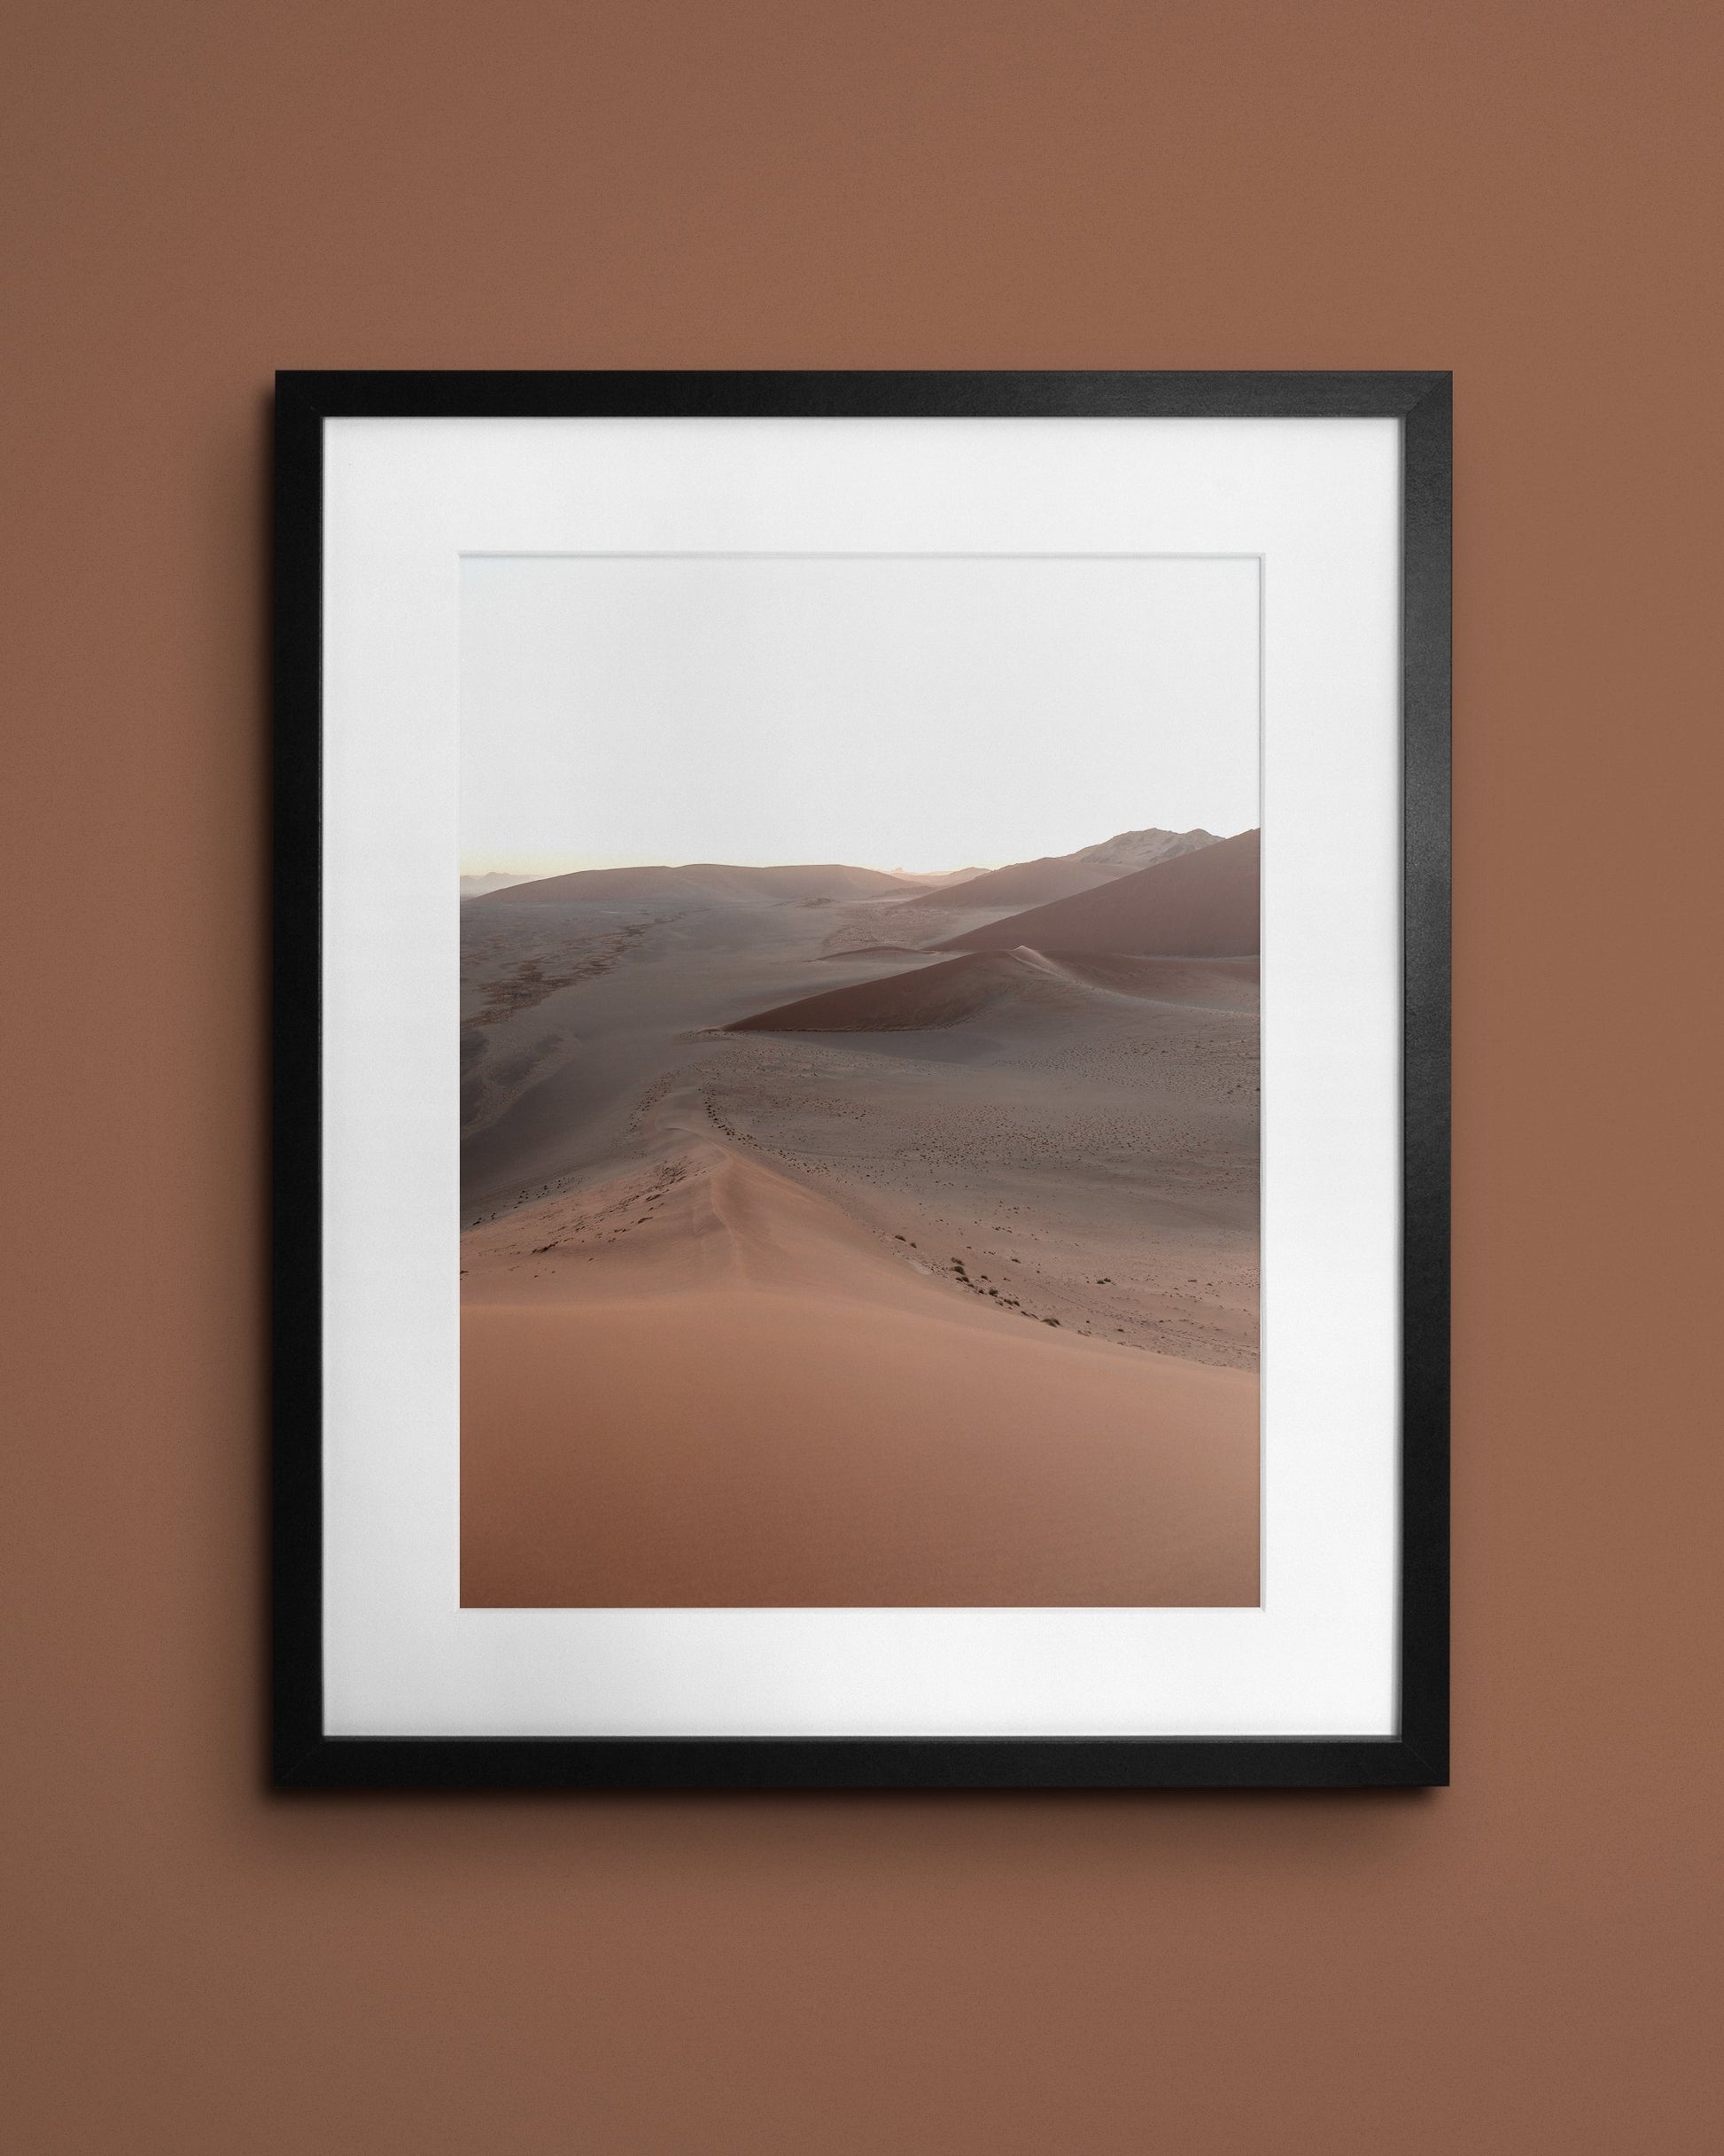 Fine-art print called Morning dune from Kaj on the wall